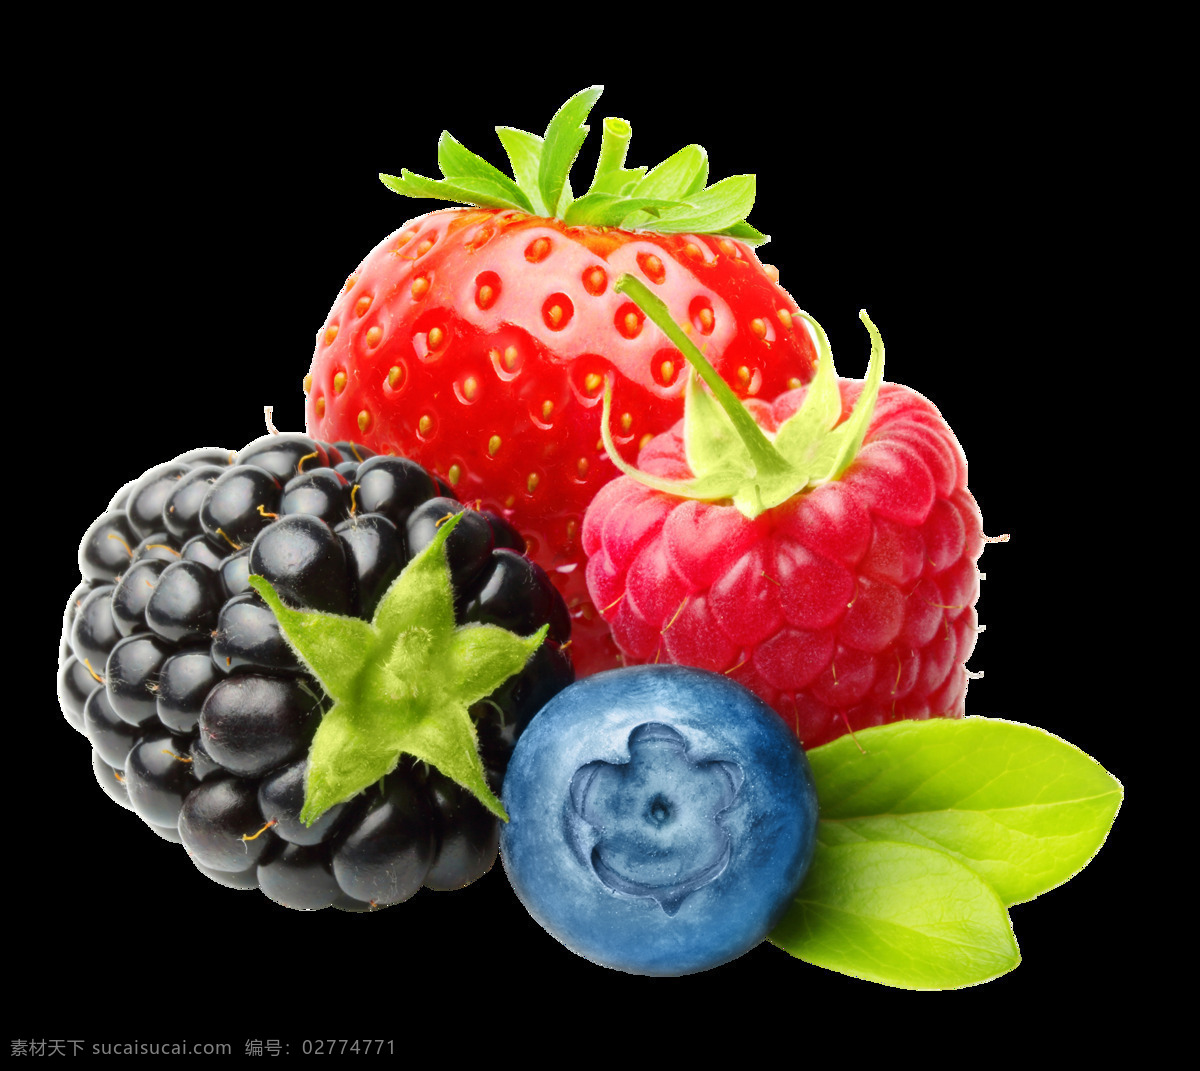 水果 红枣 草莓 牛油果 缤纷夏日 免抠水果素材 热带水果 水果夏日 透明 背景 夏日水果